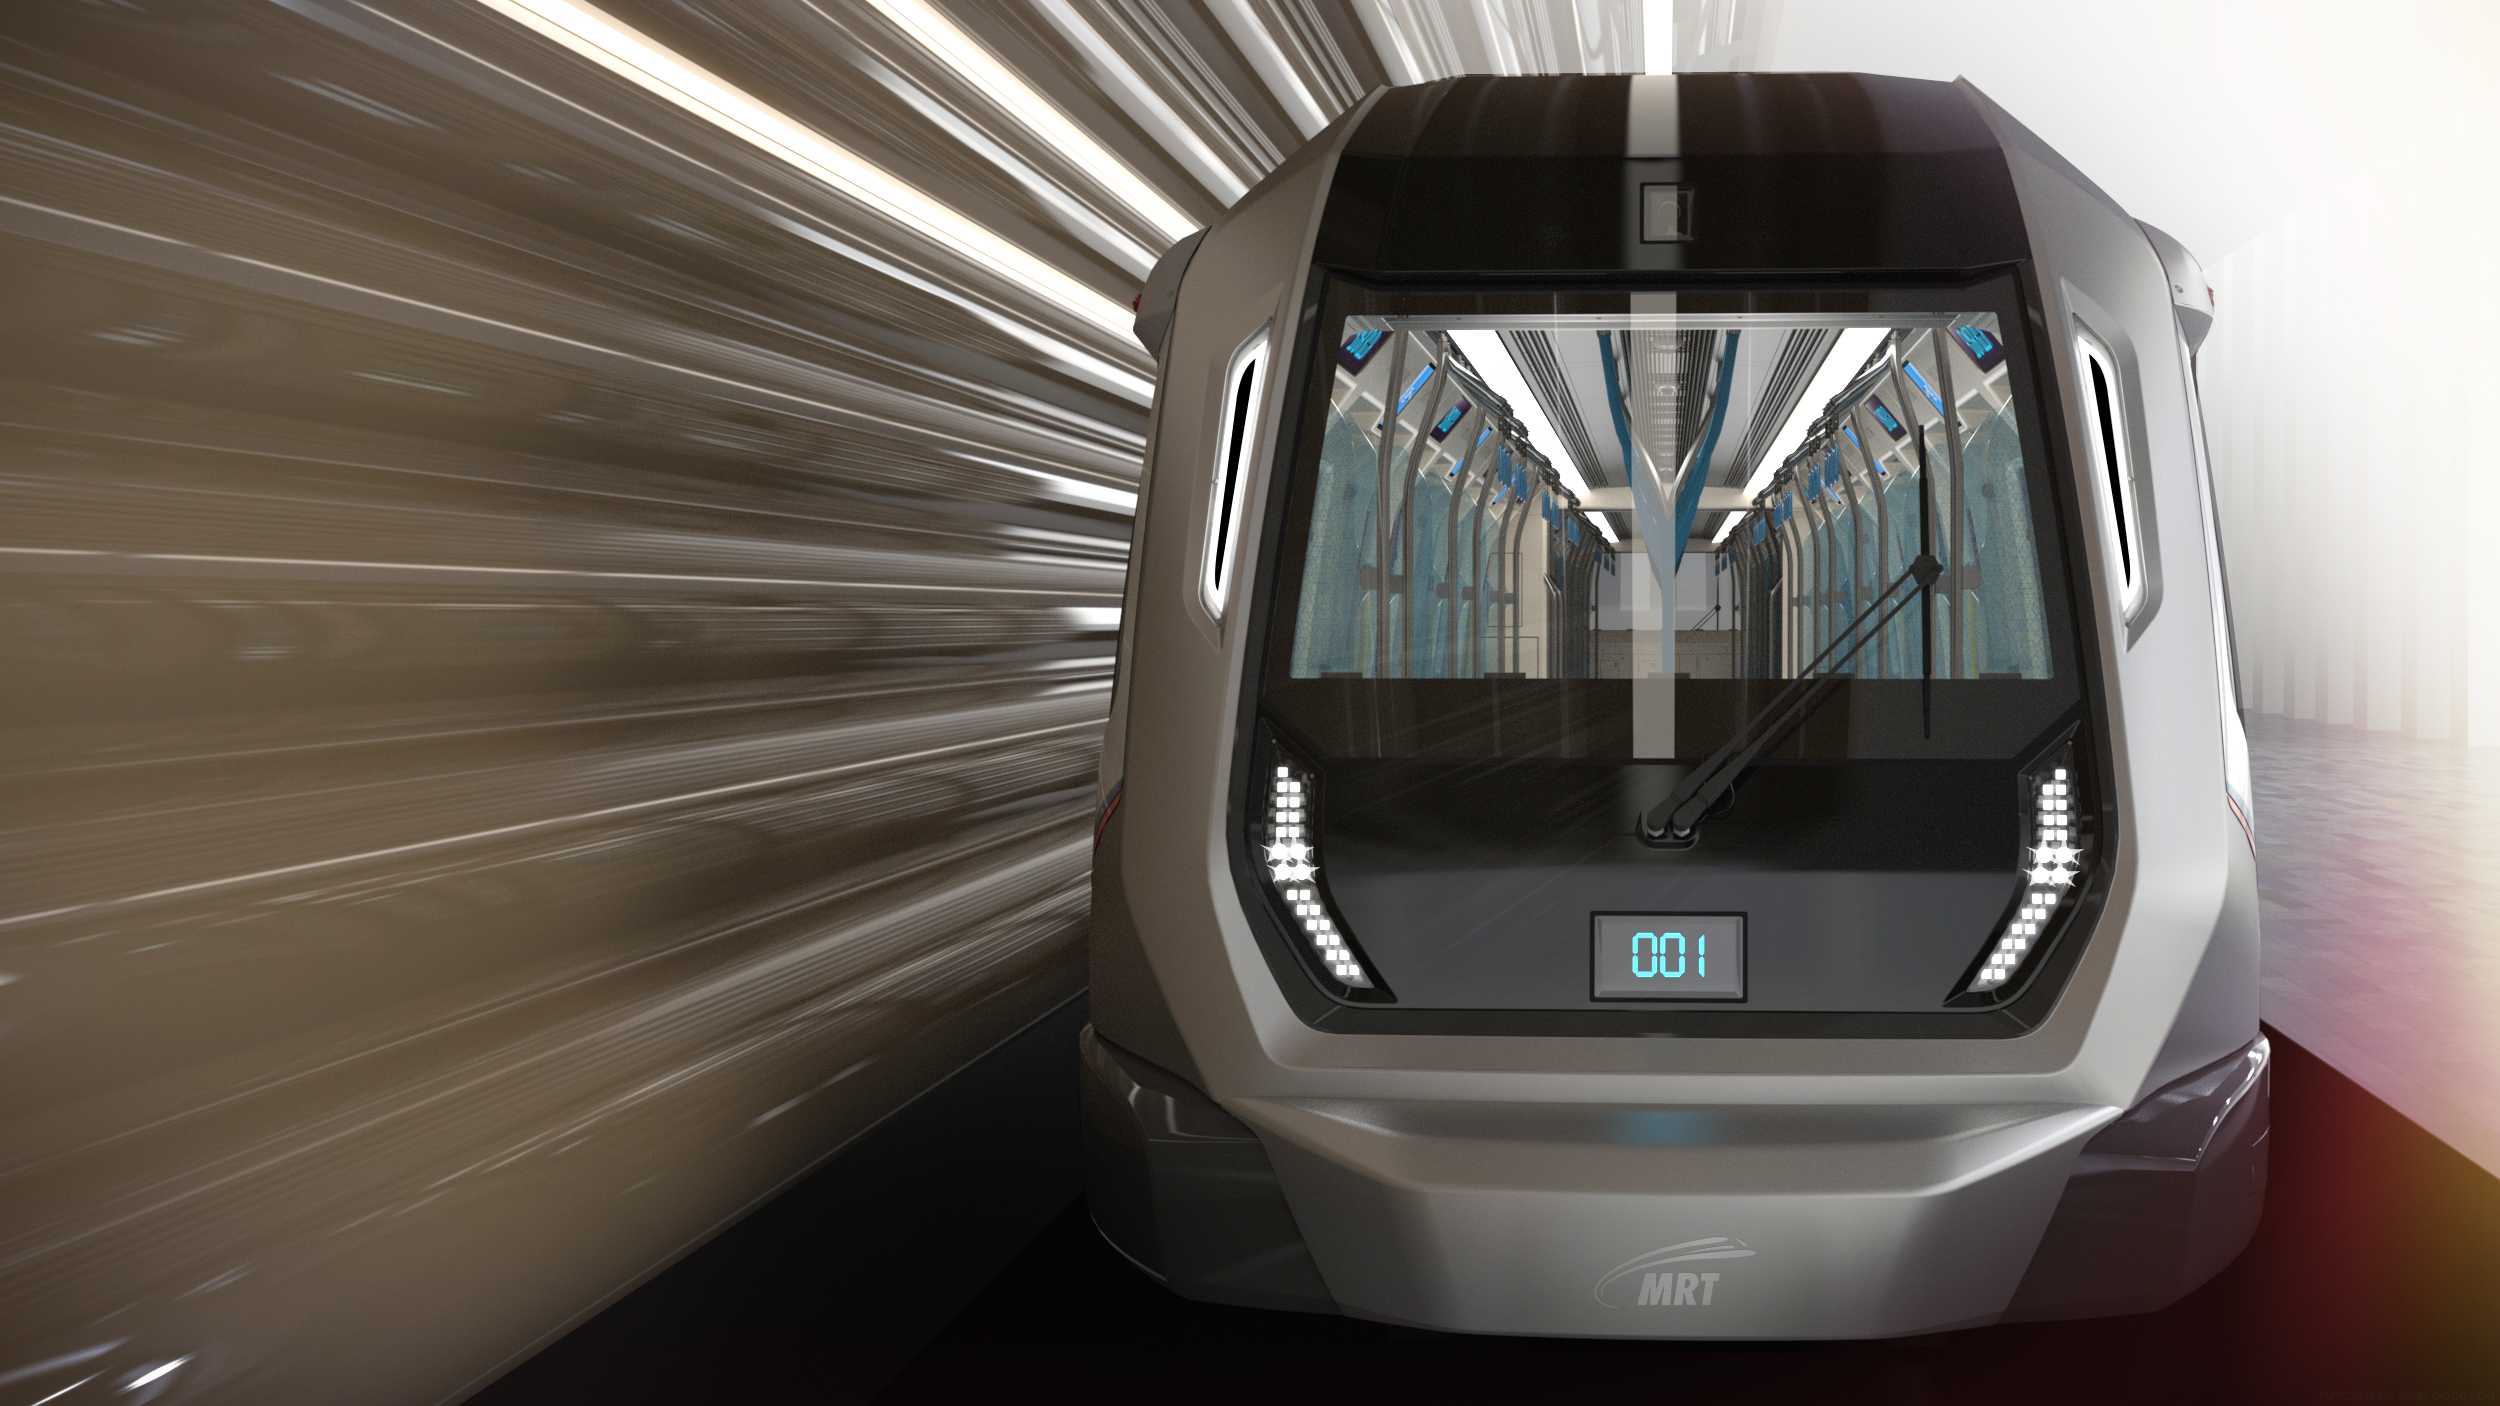 A new metro for Kuala Lumpur.